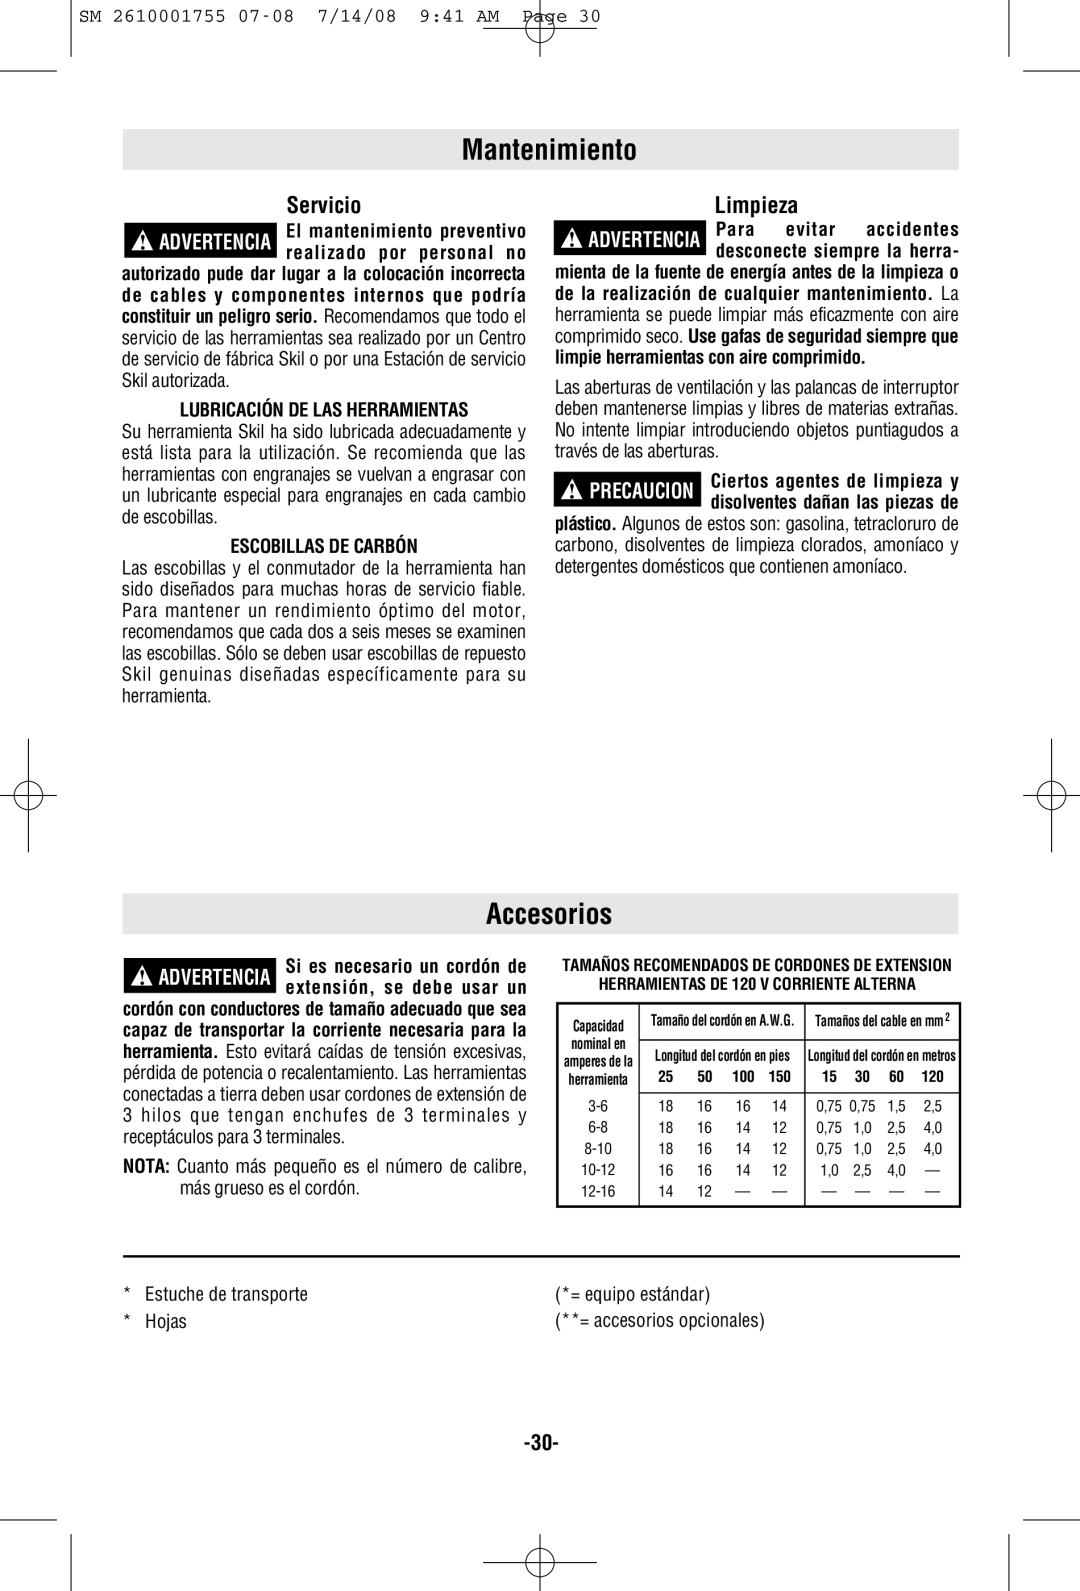 Skil 9215 manual Mantenimiento, Accesorios, Servicio, Limpieza, SM 2610001755 07-08 7/14/08 941 AM Page 